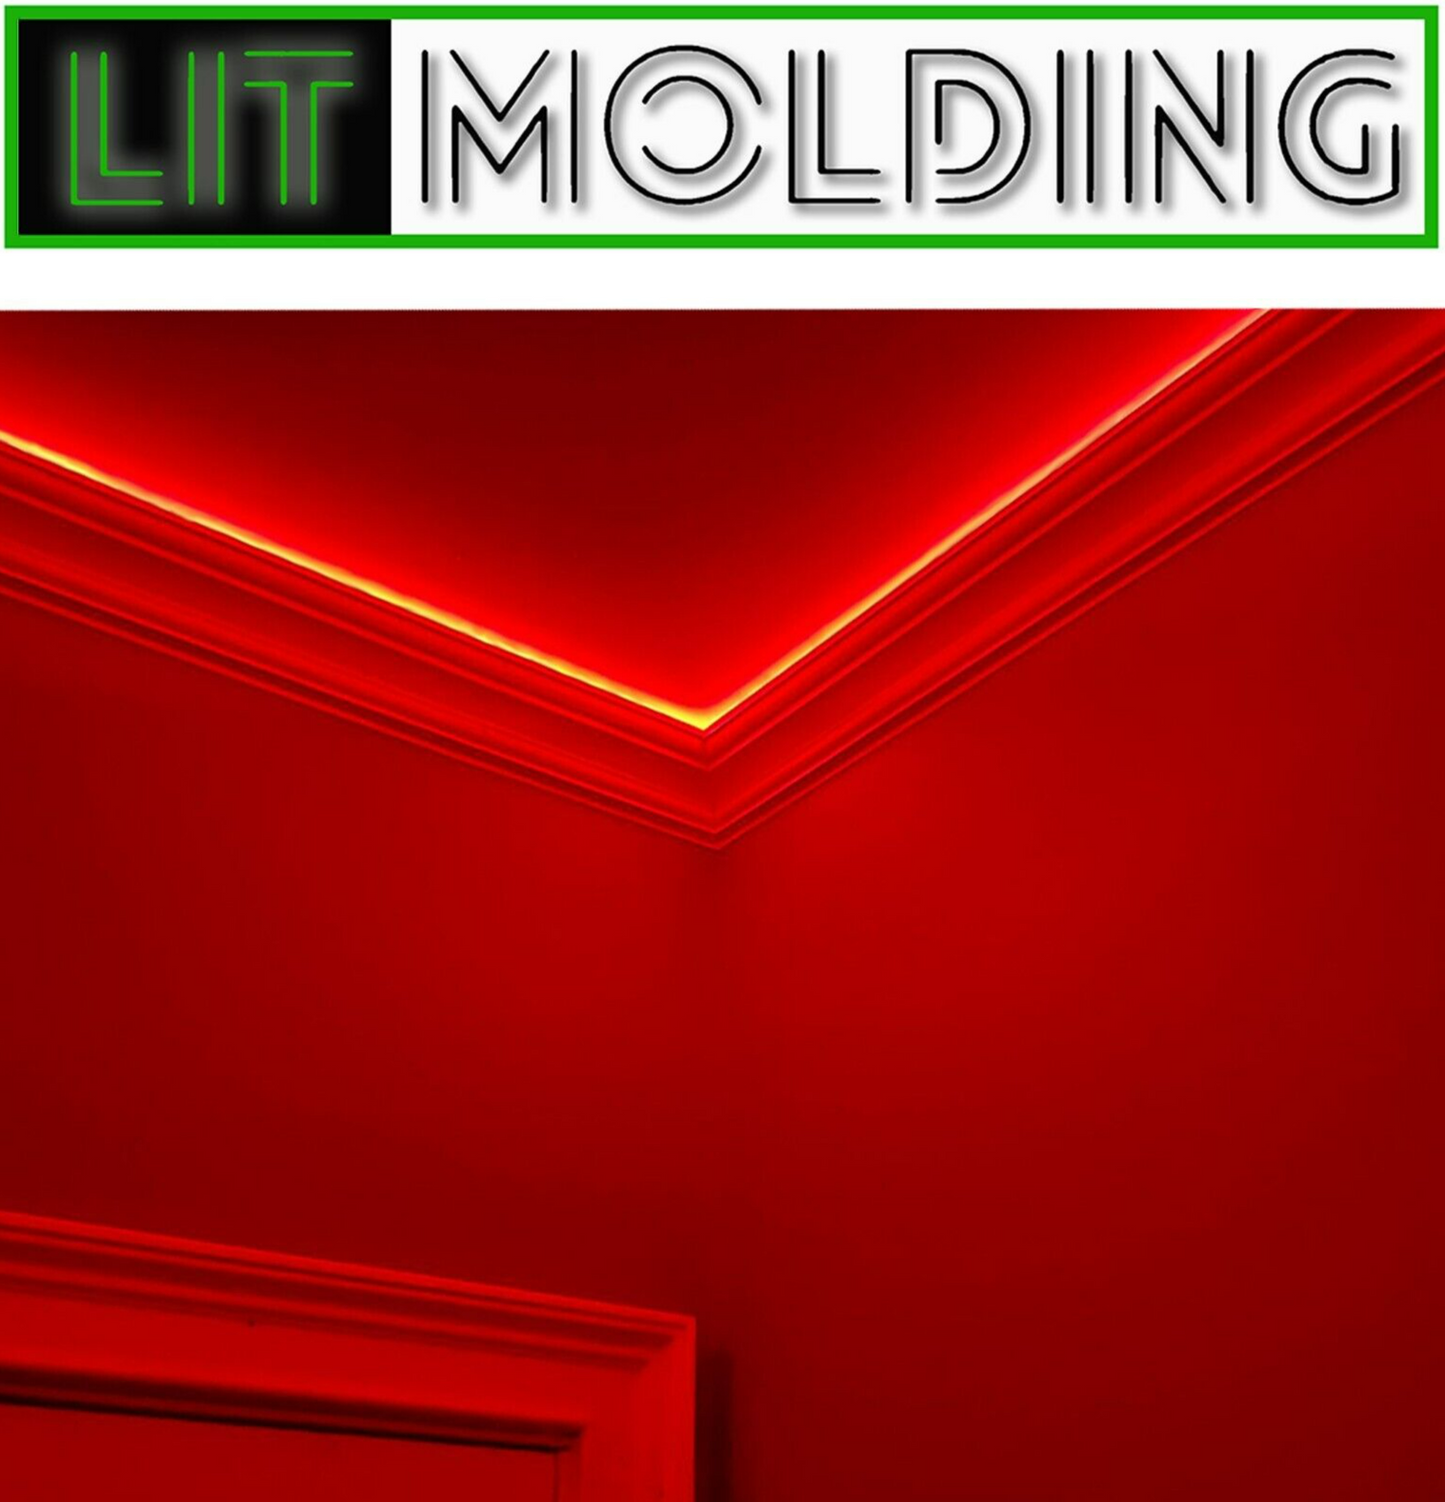 4.5" LIT Molding LED backlit crown molding 85' kit.